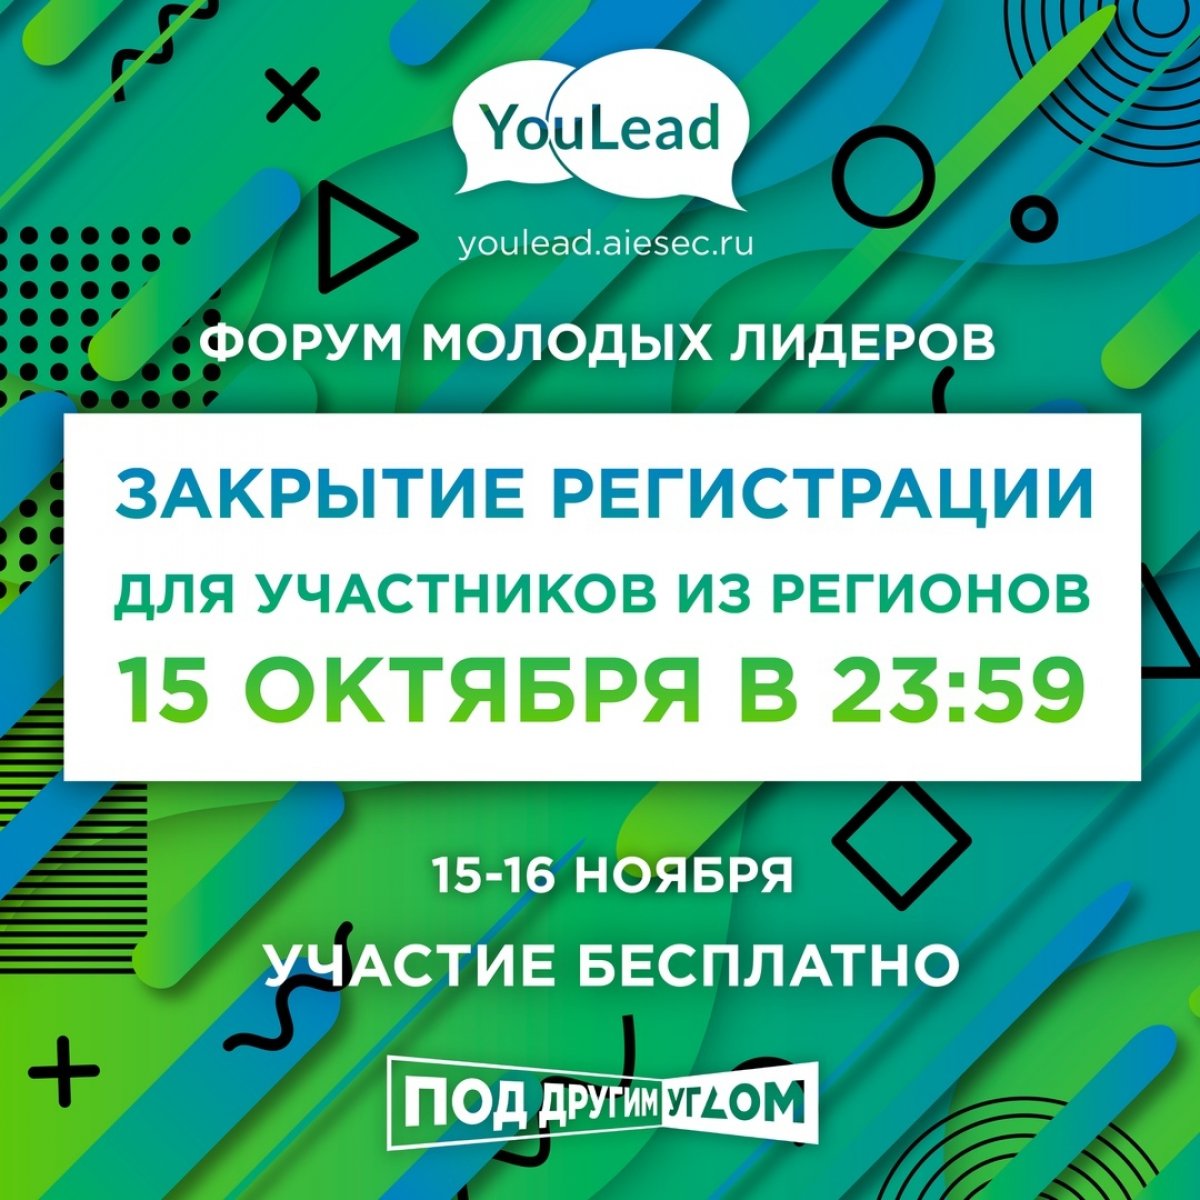 Осталась всего пара дней до закрытия регистрации на IX всероссийский форум молодых лидеров YouLead в Москве!